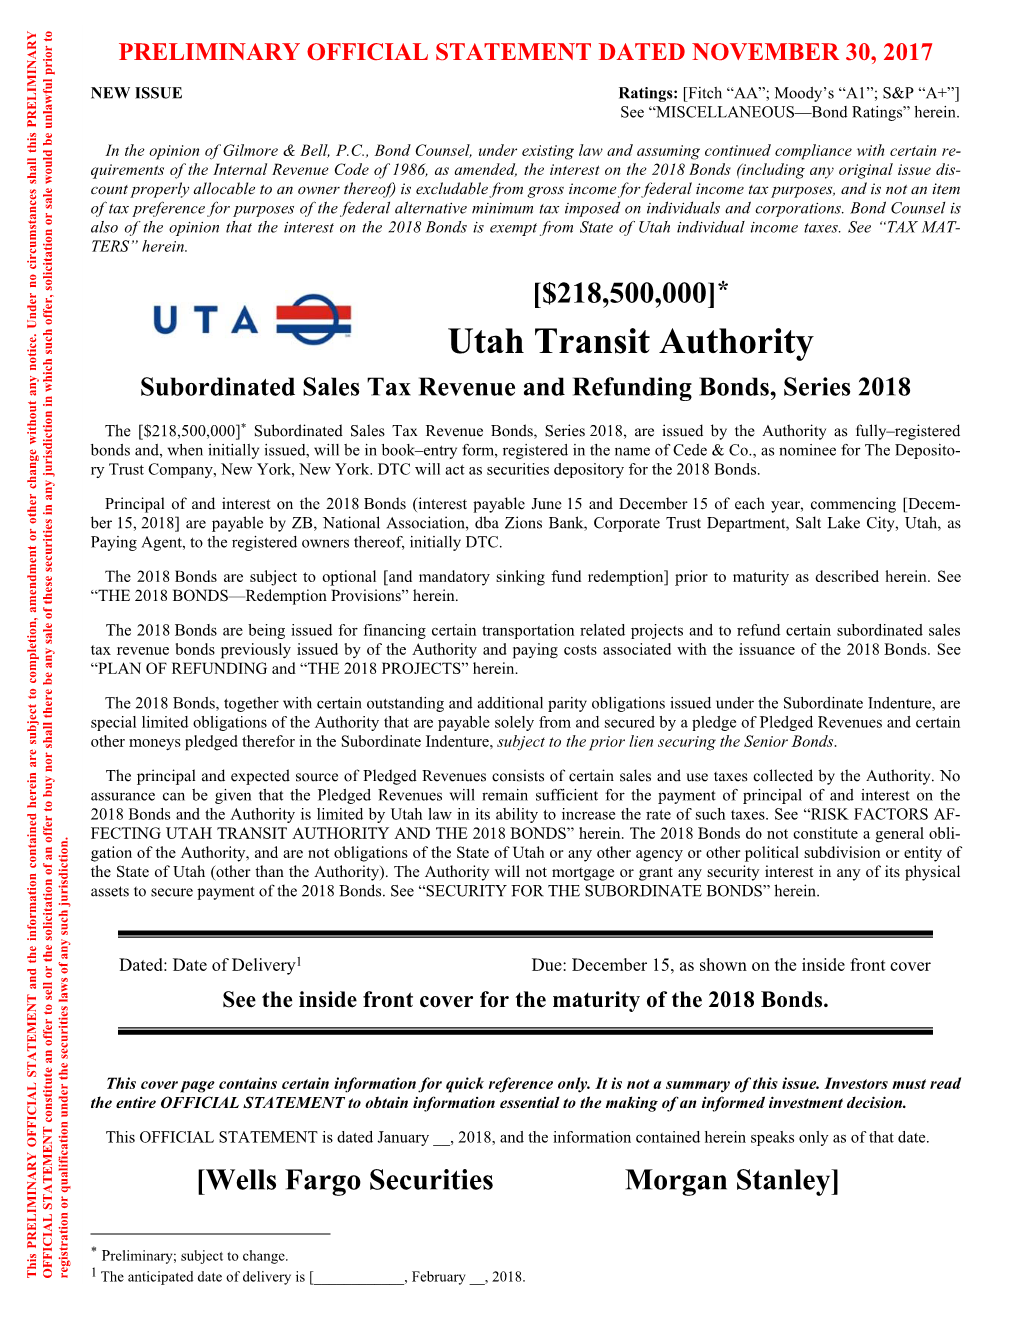 Utah Transit Authority [$218500000]